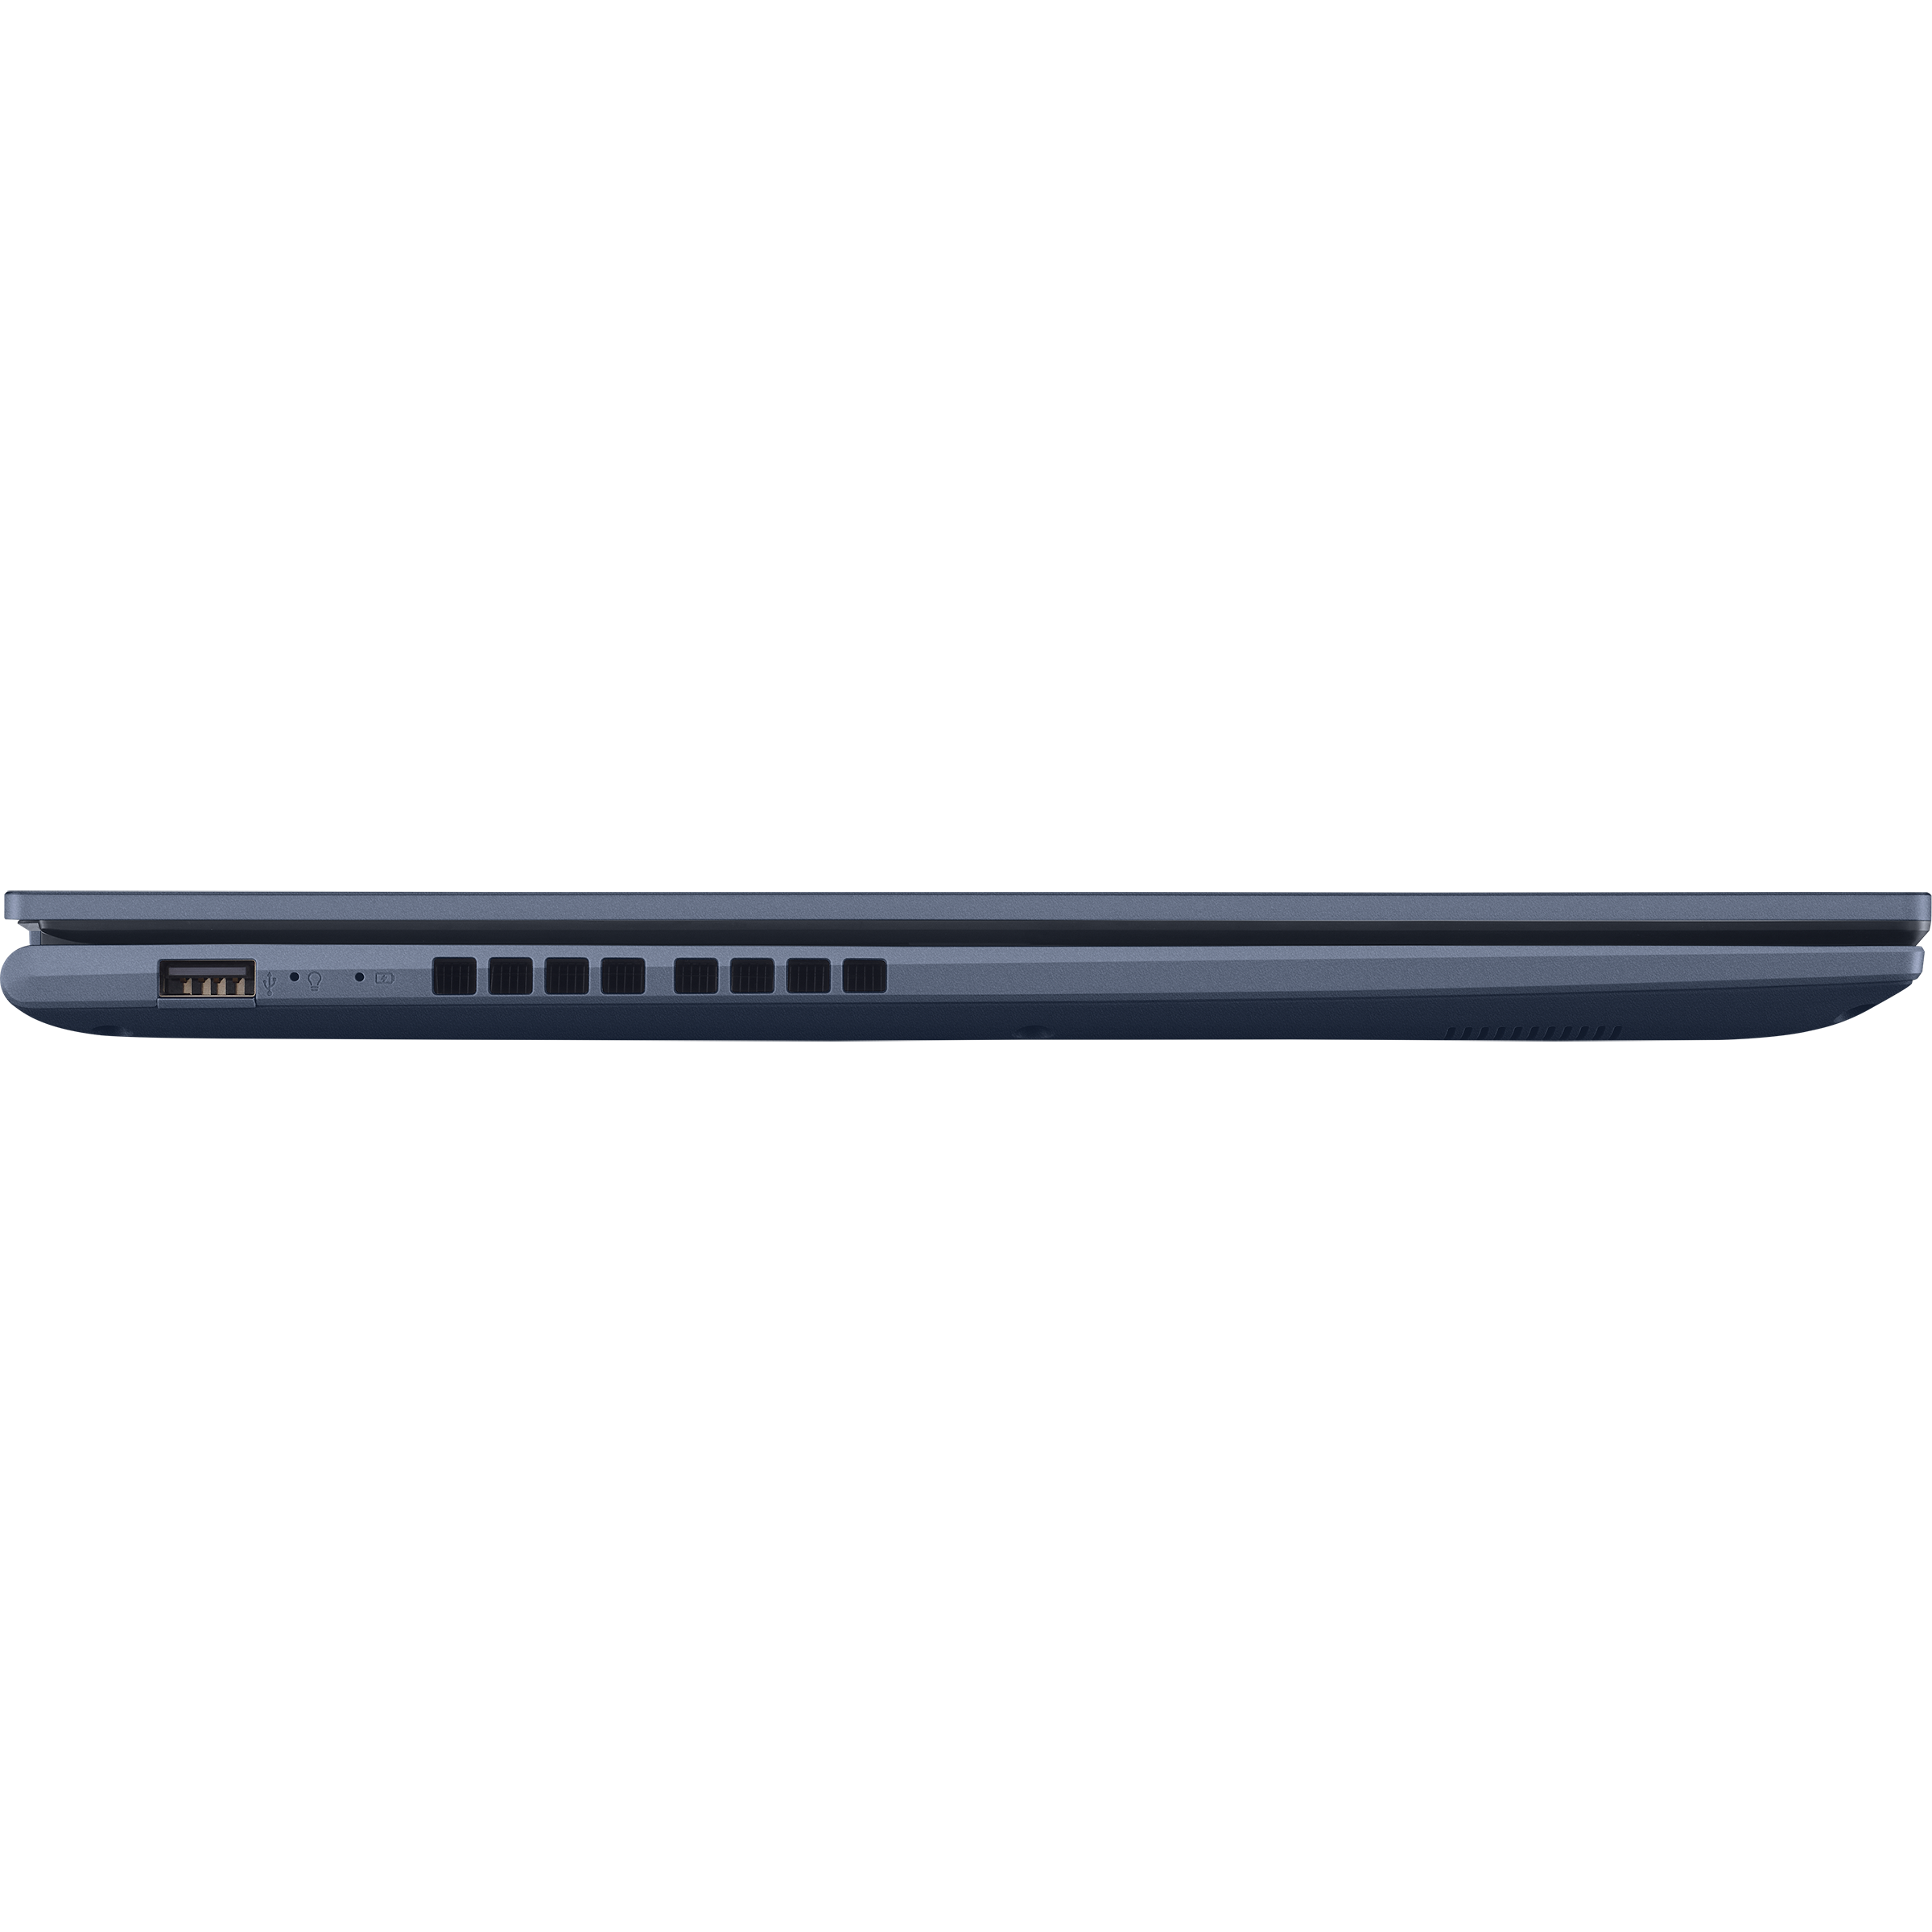 Vivobook 17 (M1702, AMD Ryzen 5000 series)｜Laptops For Home｜ASUS Global